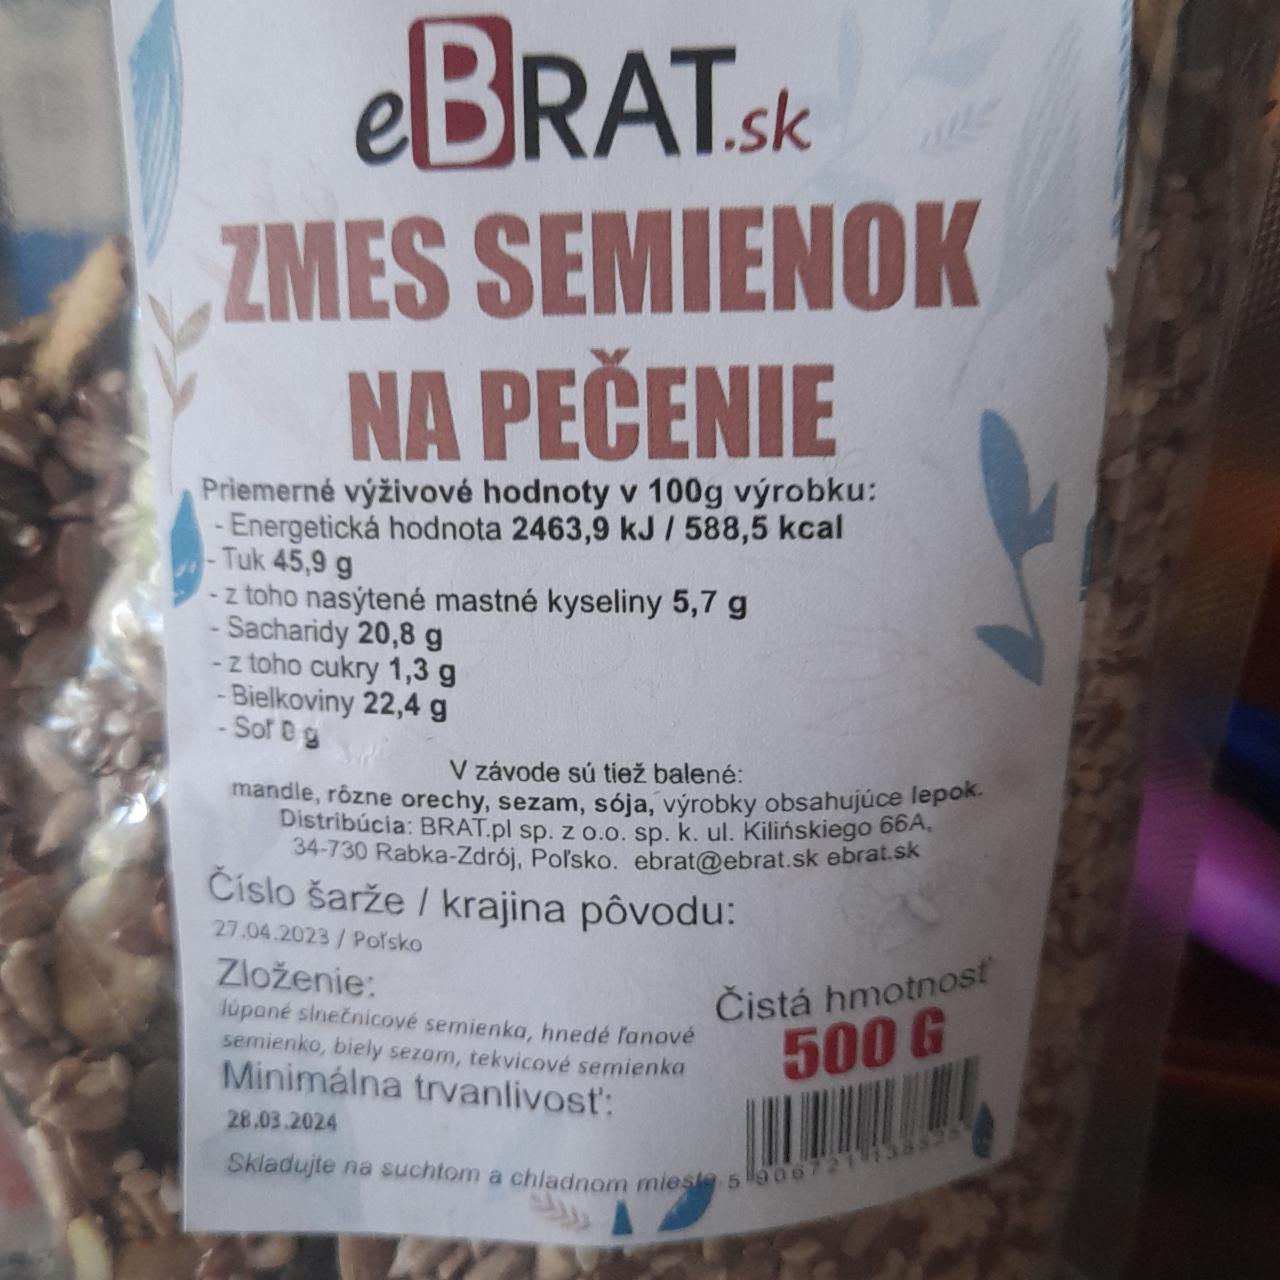 Fotografie - Zmes semienok na pečenie eBrat.sk